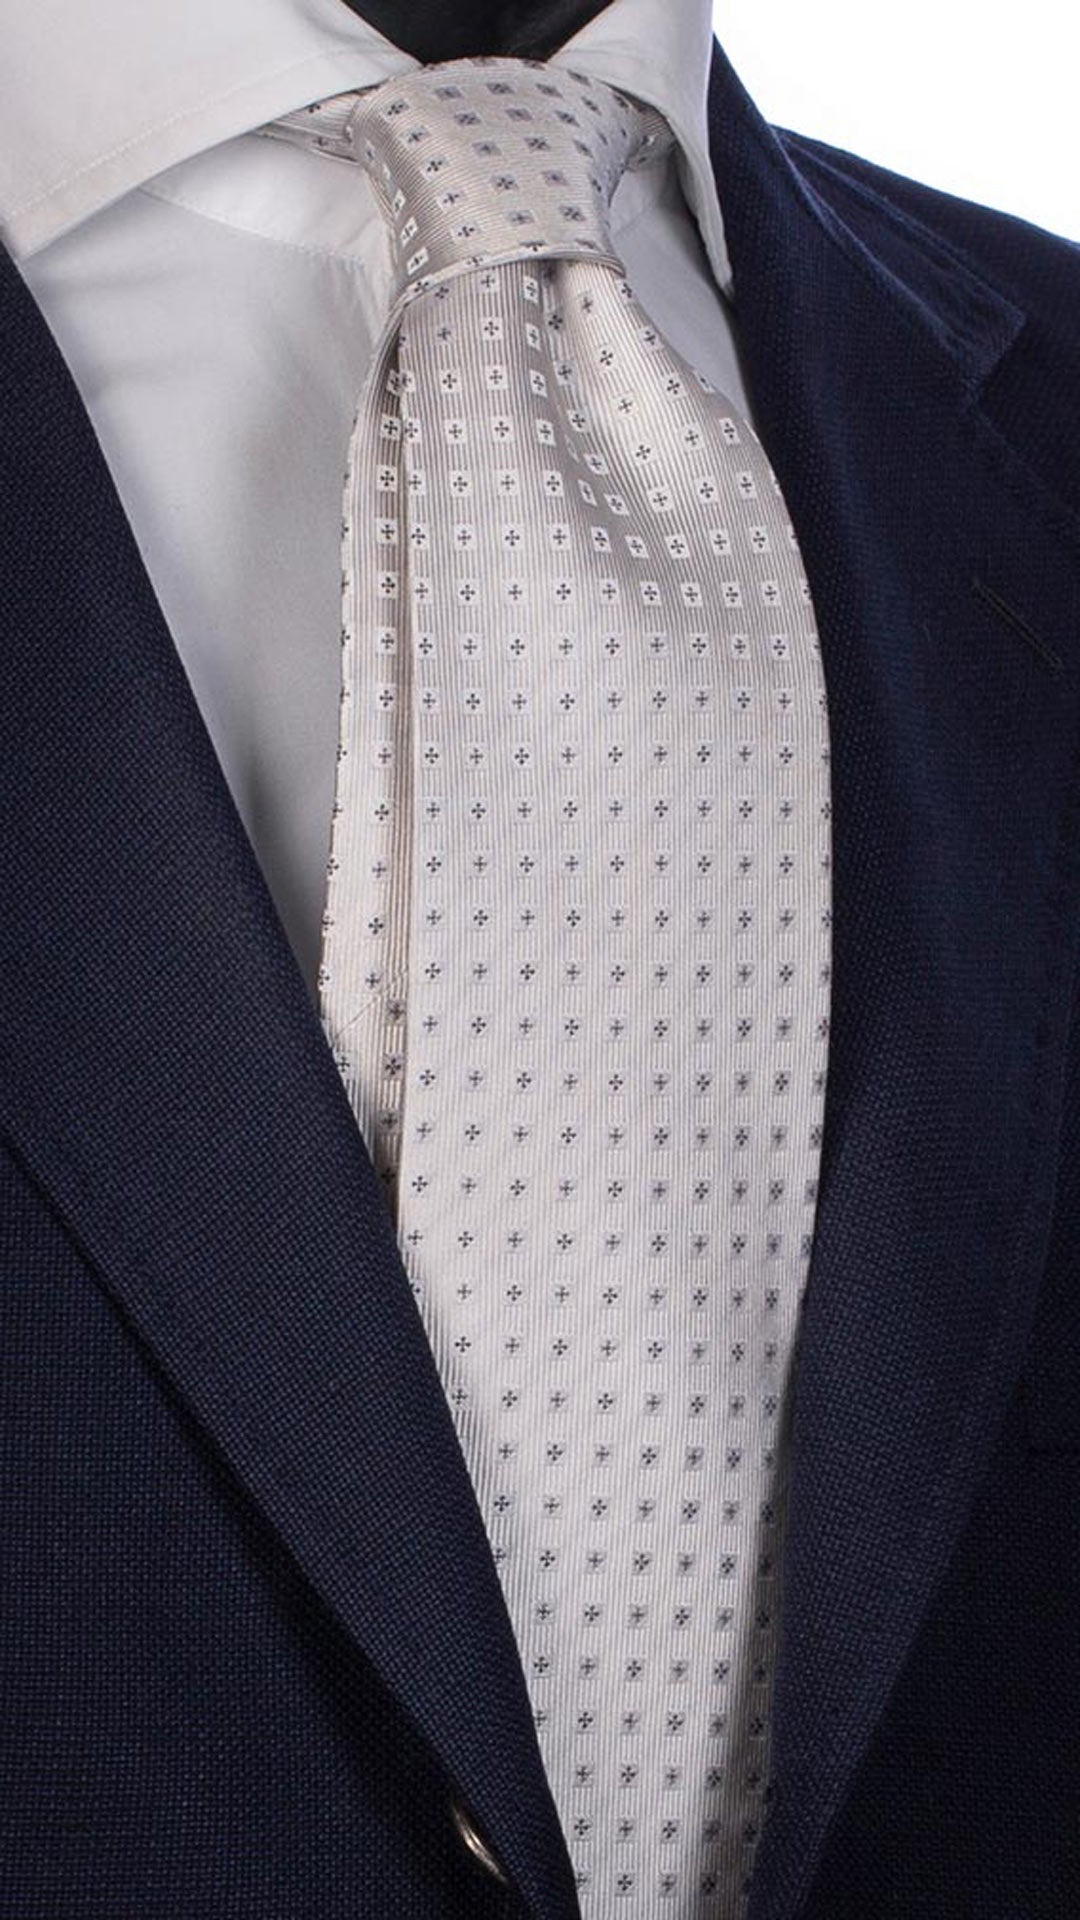 Cravatta da Cerimonia di Seta Bianca Avorio Fantasia Grigio Scuro CY2562 Made in italy Graffeo Cravatte